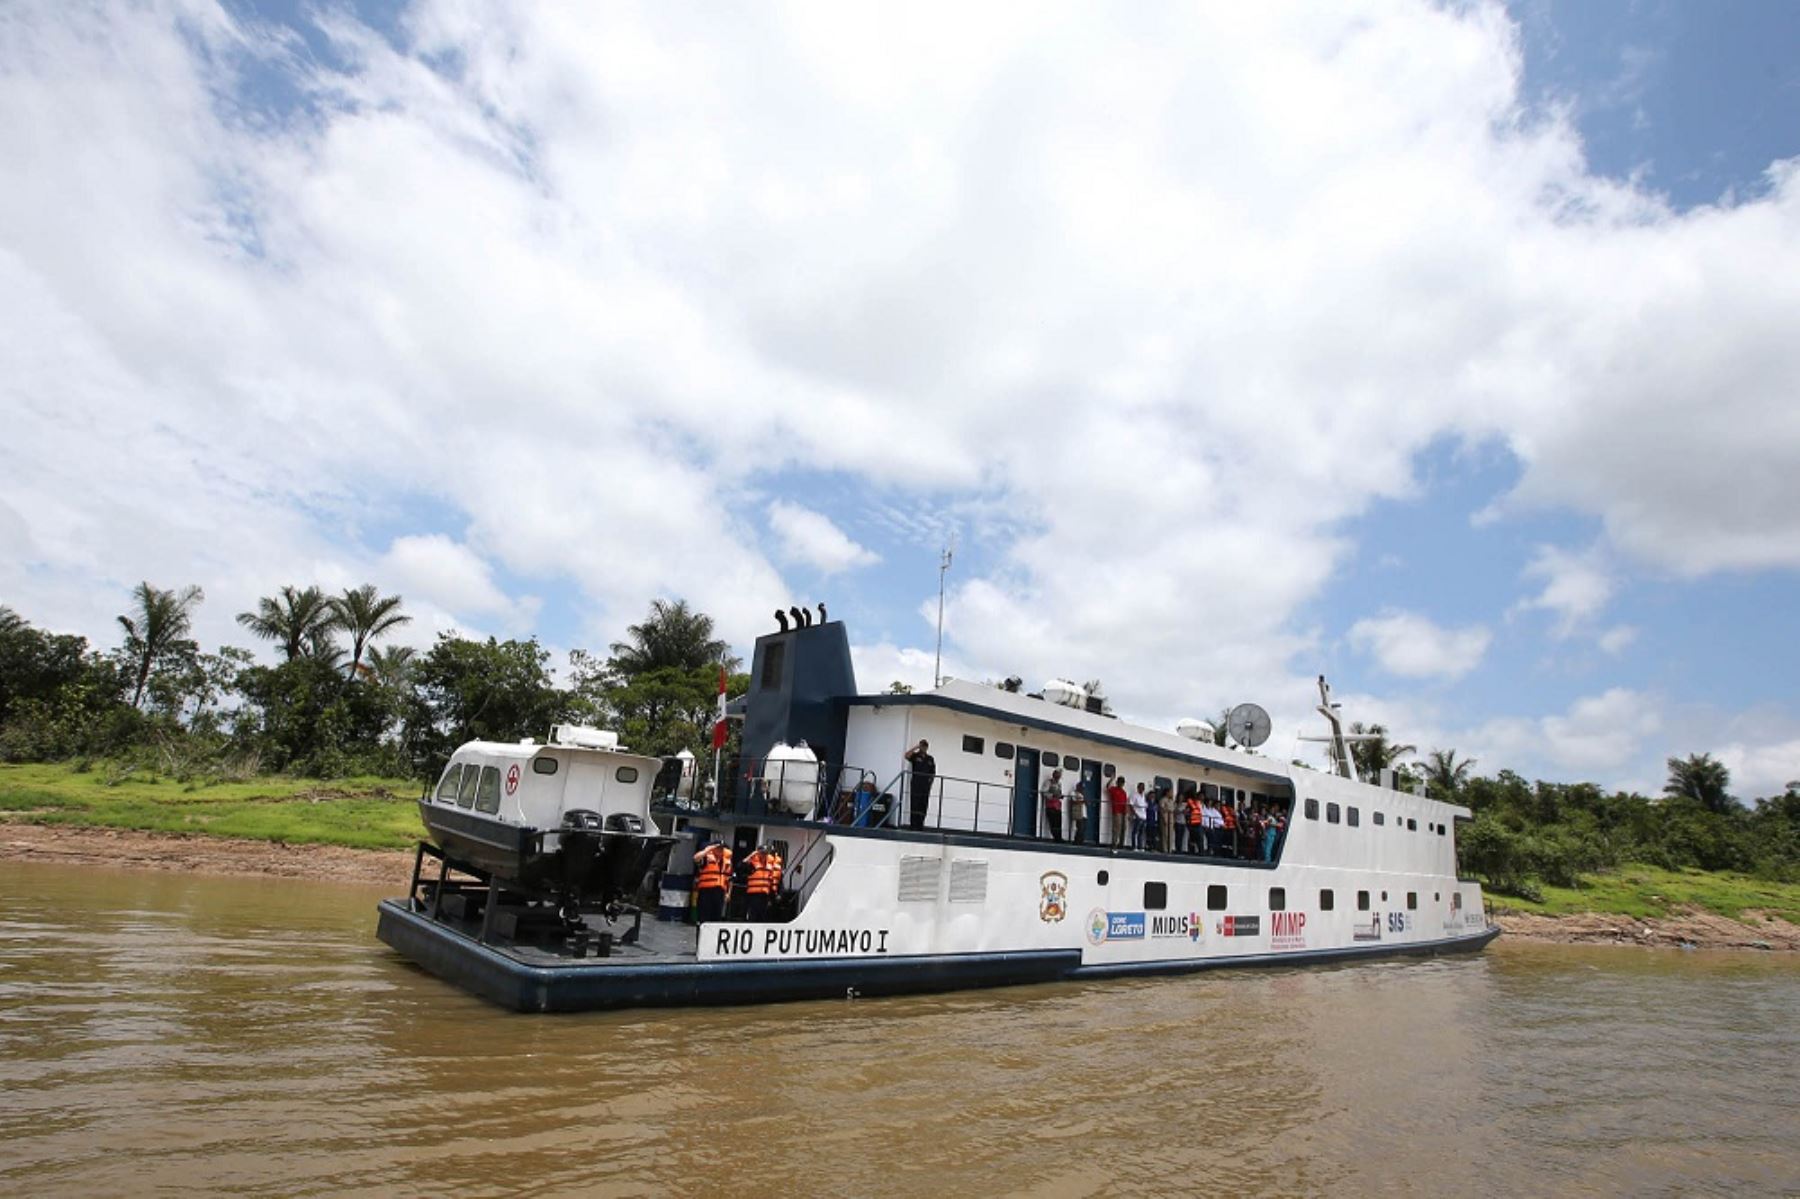 Las cuatro embarcaciones que albergan las plataformas itinerantes de acción social (PIAS), coordinadas por el Ministerio de Desarrollo e Inclusión Social (Midis) y operadas por la Marina de Guerra del Perú, acercarán los diversos servicios del Estado a más de 25,000 pobladores de las cuencas más alejadas de la Amazonía.